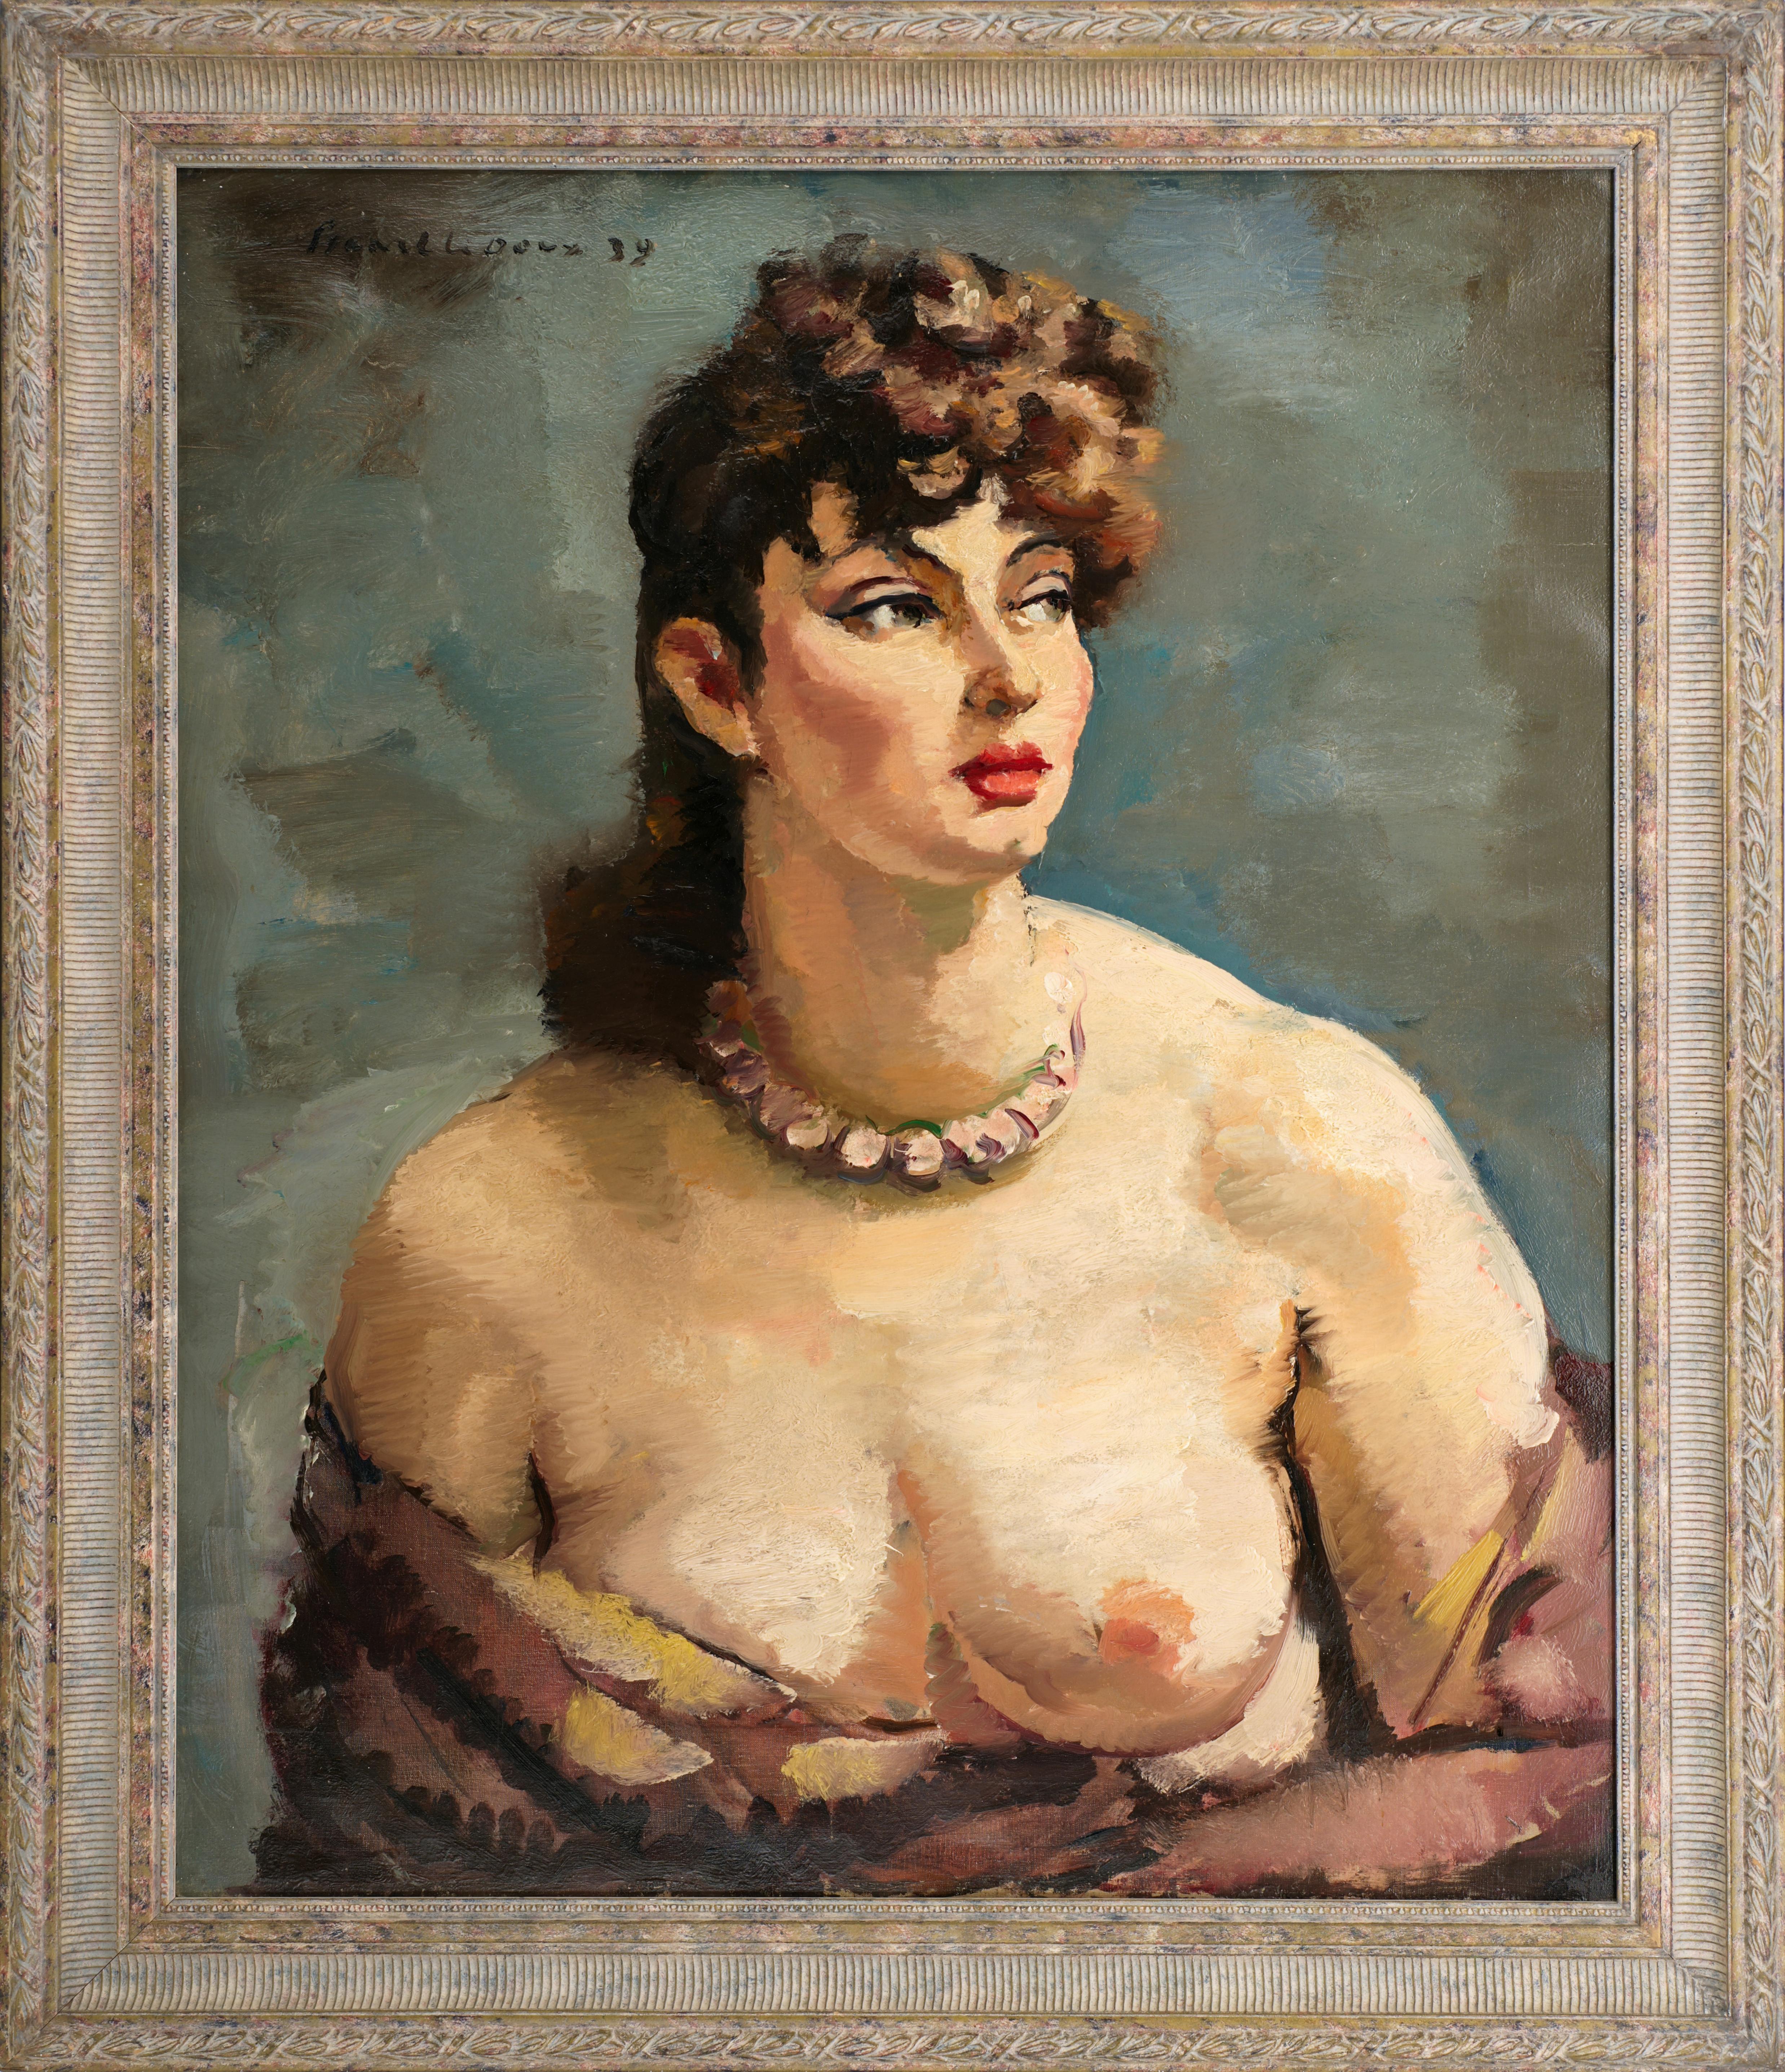 Charles PICART LE DOUX, Das schöne Mädchen, Öl auf Leinwand, 1939